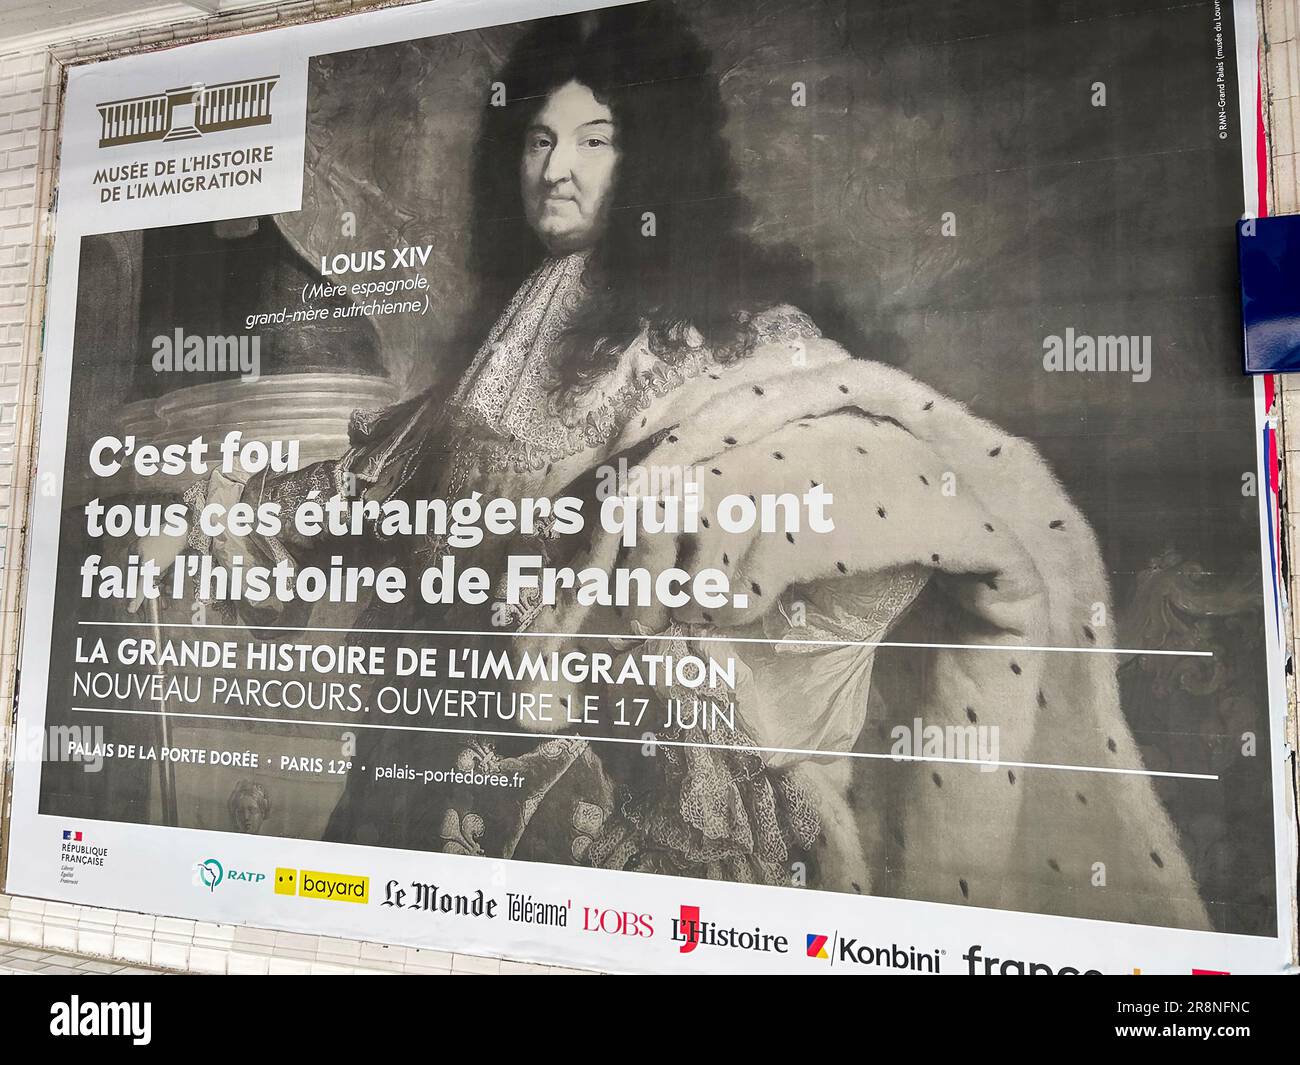 Paris, France, Publicité française en plein air affiche de voyage dans le métro de Paris, Musée de l'immigration, slogan Louis XIV: "C'est fou comment tous ces étrangers..." Banque D'Images